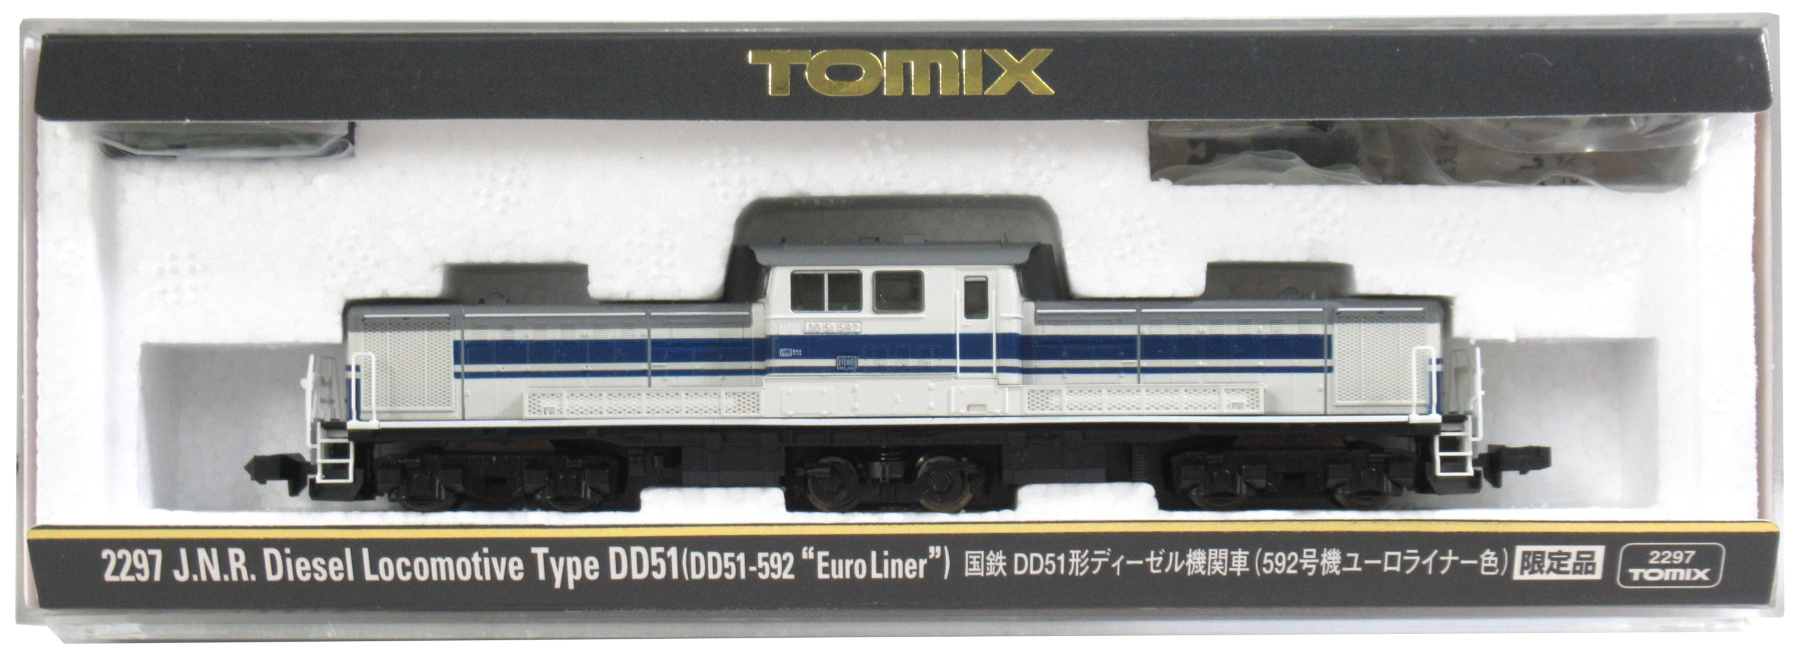 公式]鉄道模型(2297国鉄 DD51形ディーゼル機関車 (592号機・ユーロ